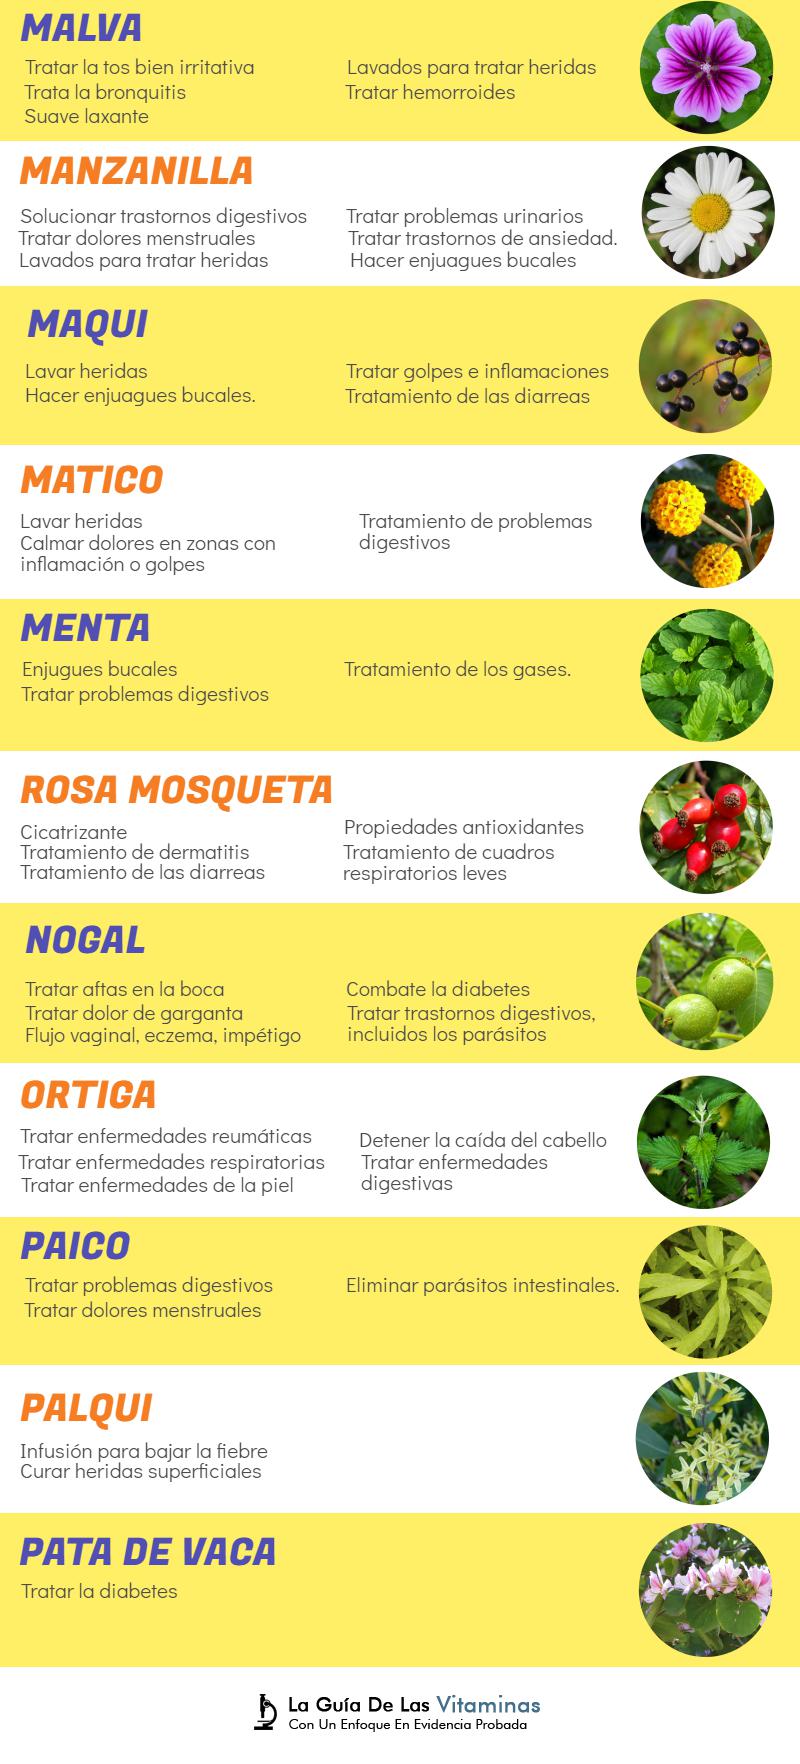 44 plantas medicinales para qué sirven y como cultivarlas